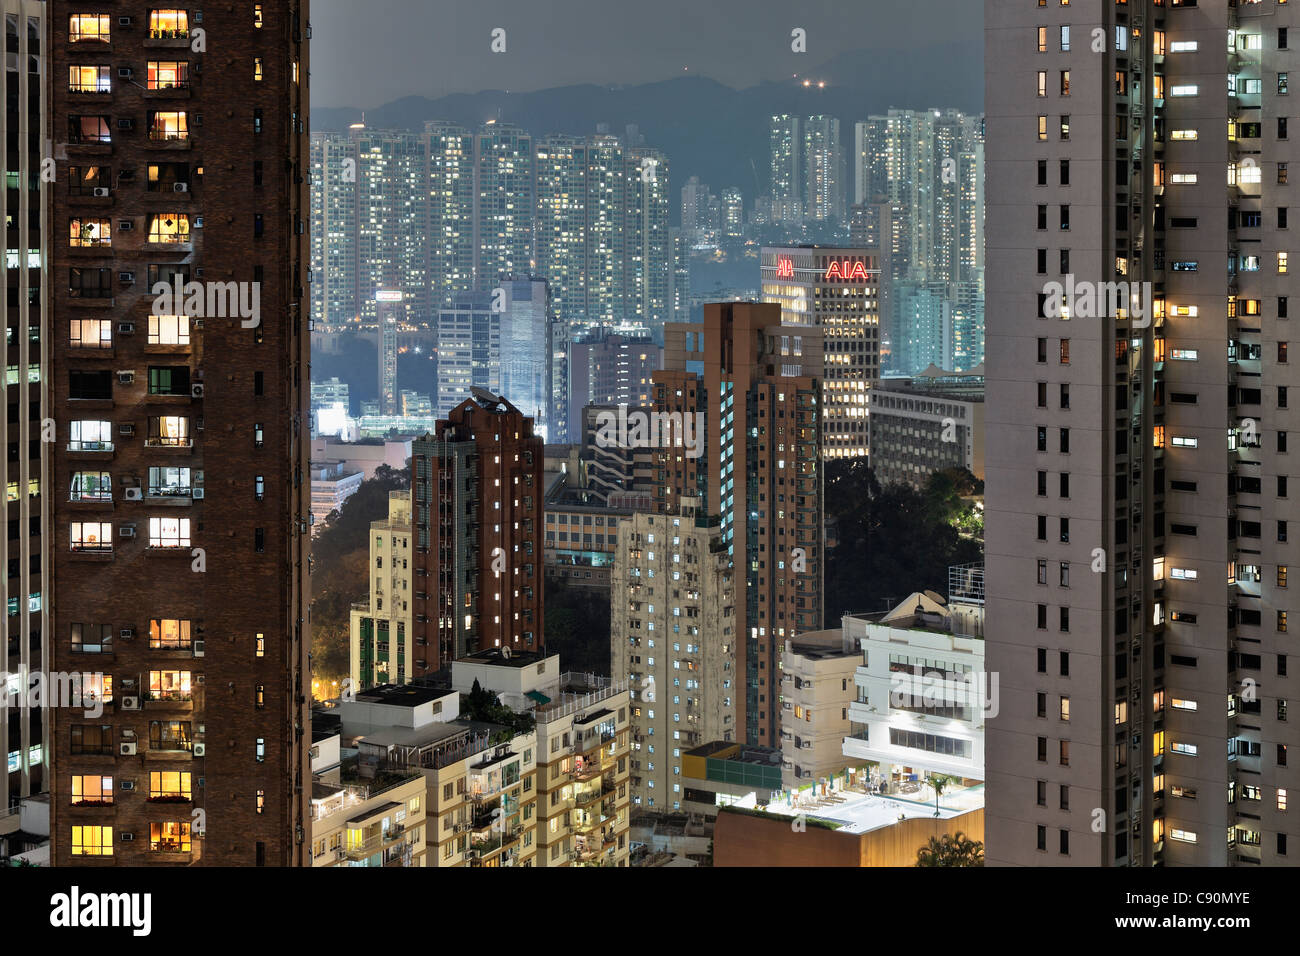 Hong Kong housing estate and American International Assurance Centre at night, Hong Kong, China Stock Photo